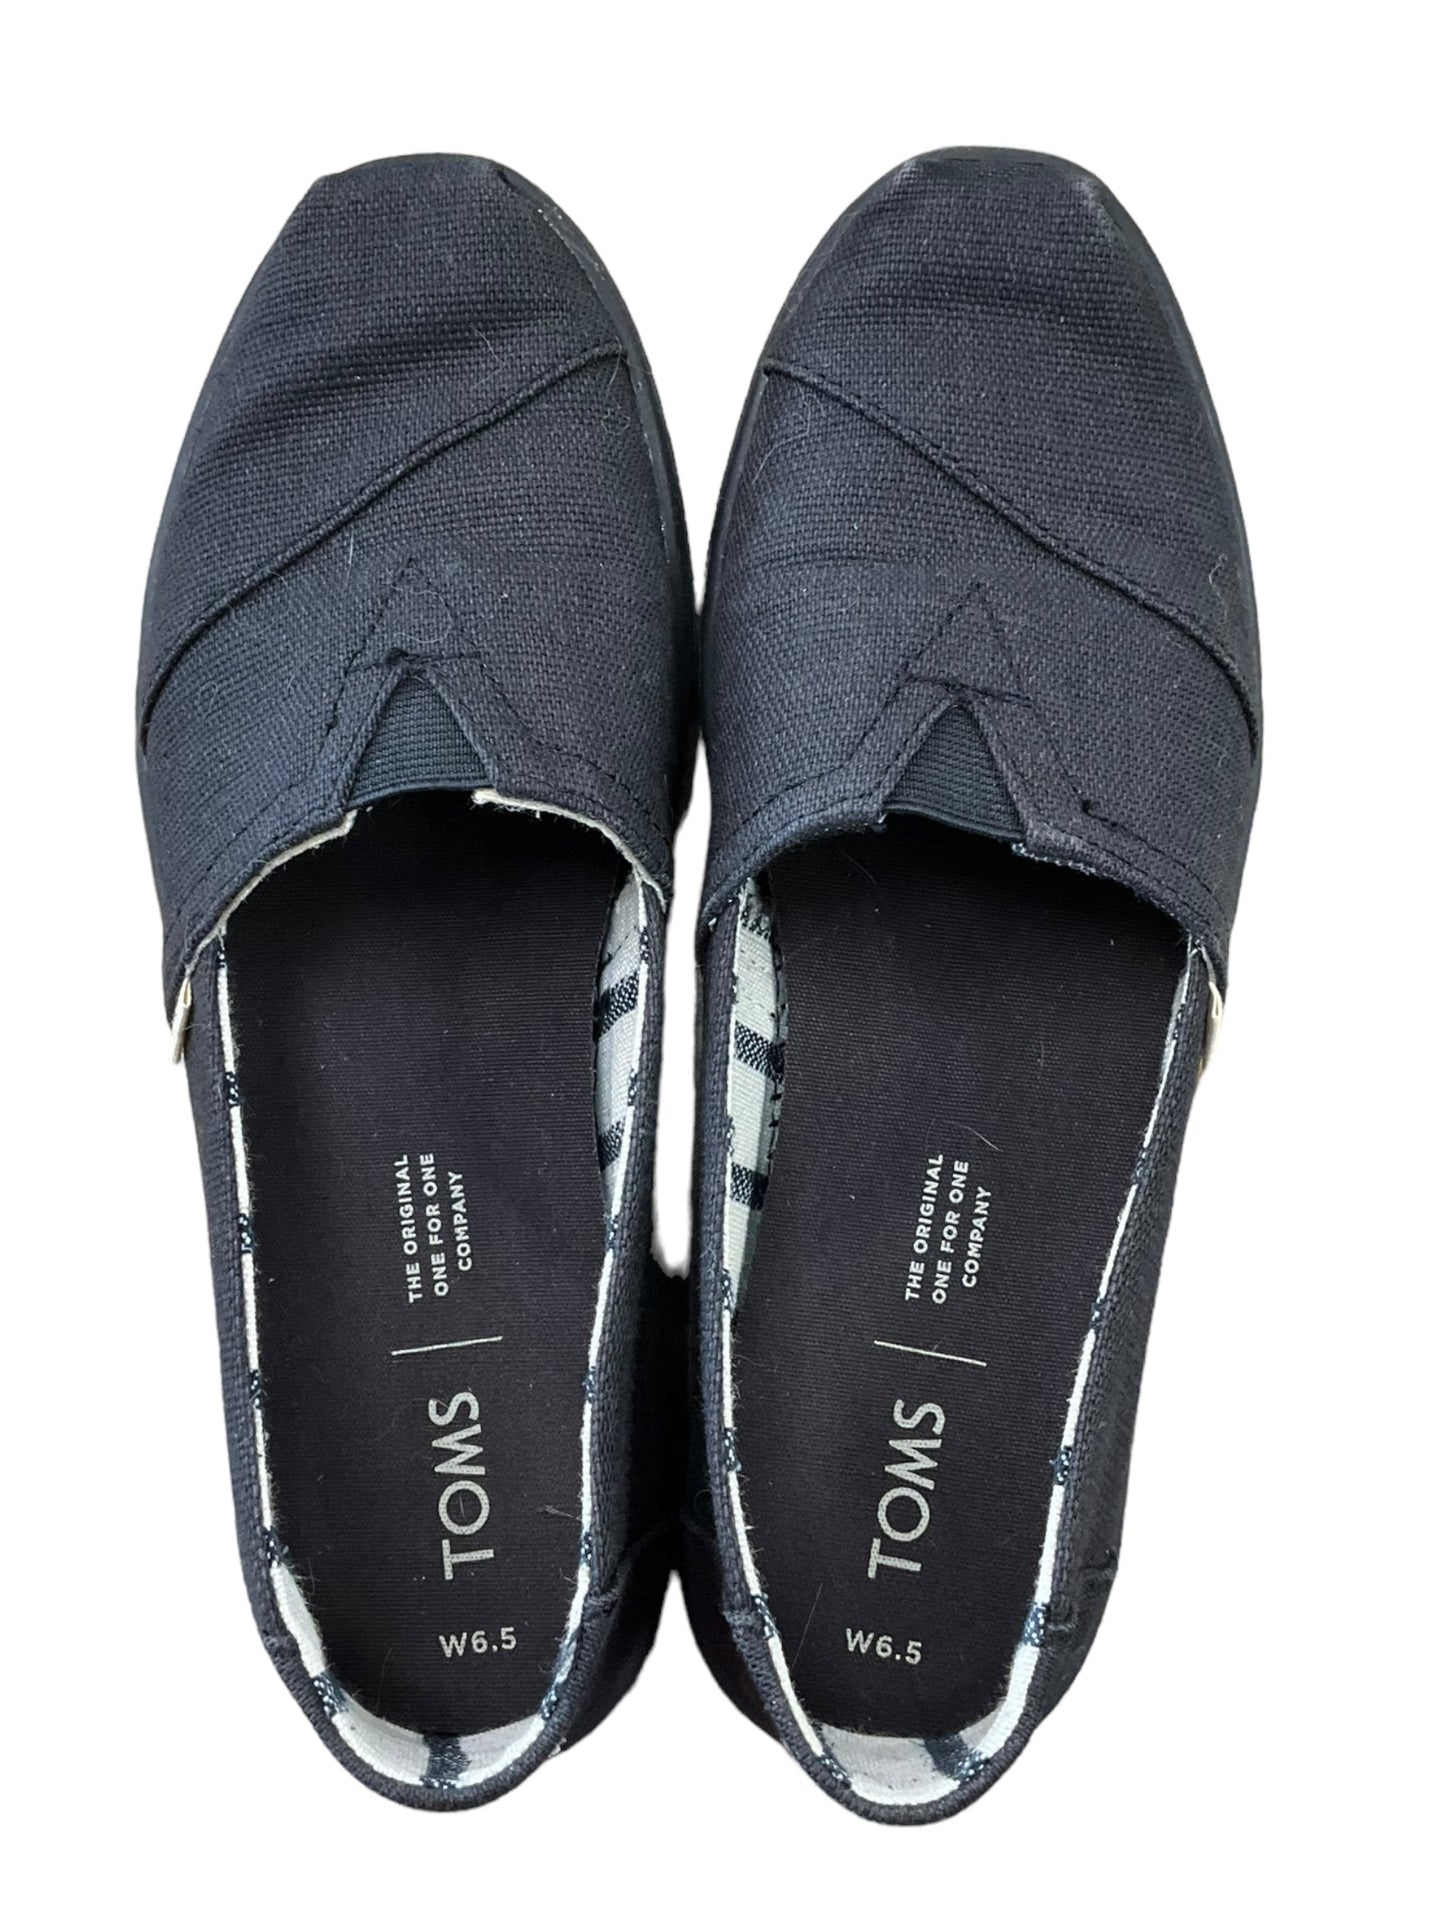 Black Shoes Flats Toms, Size 6.5